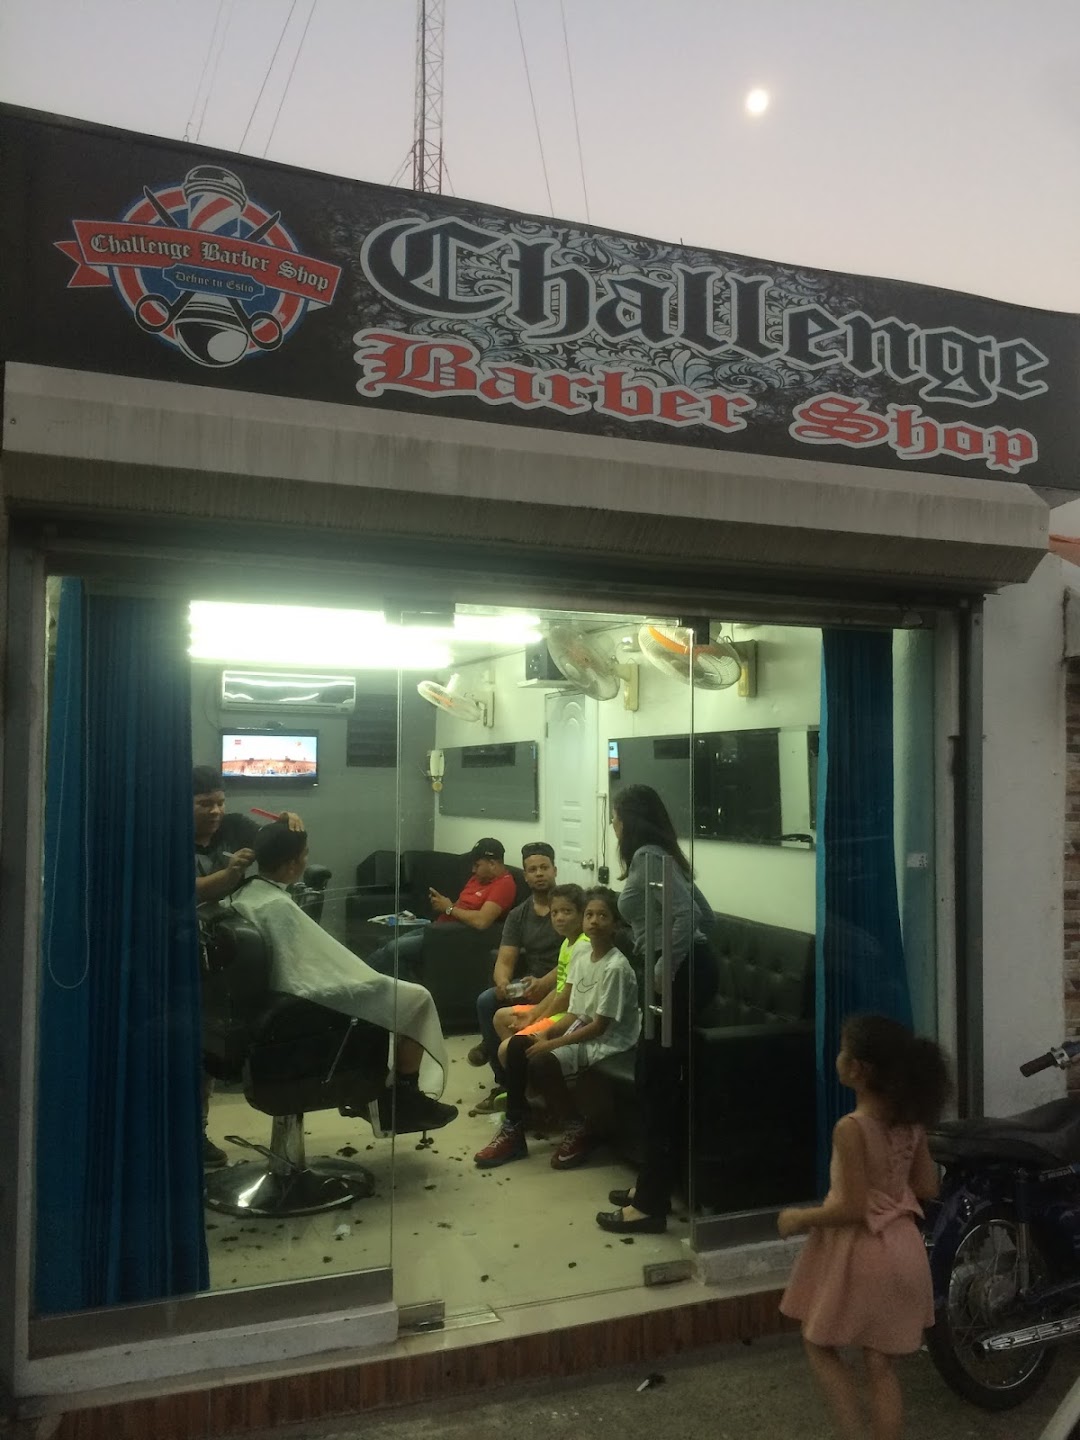 Challenge Barber Shop